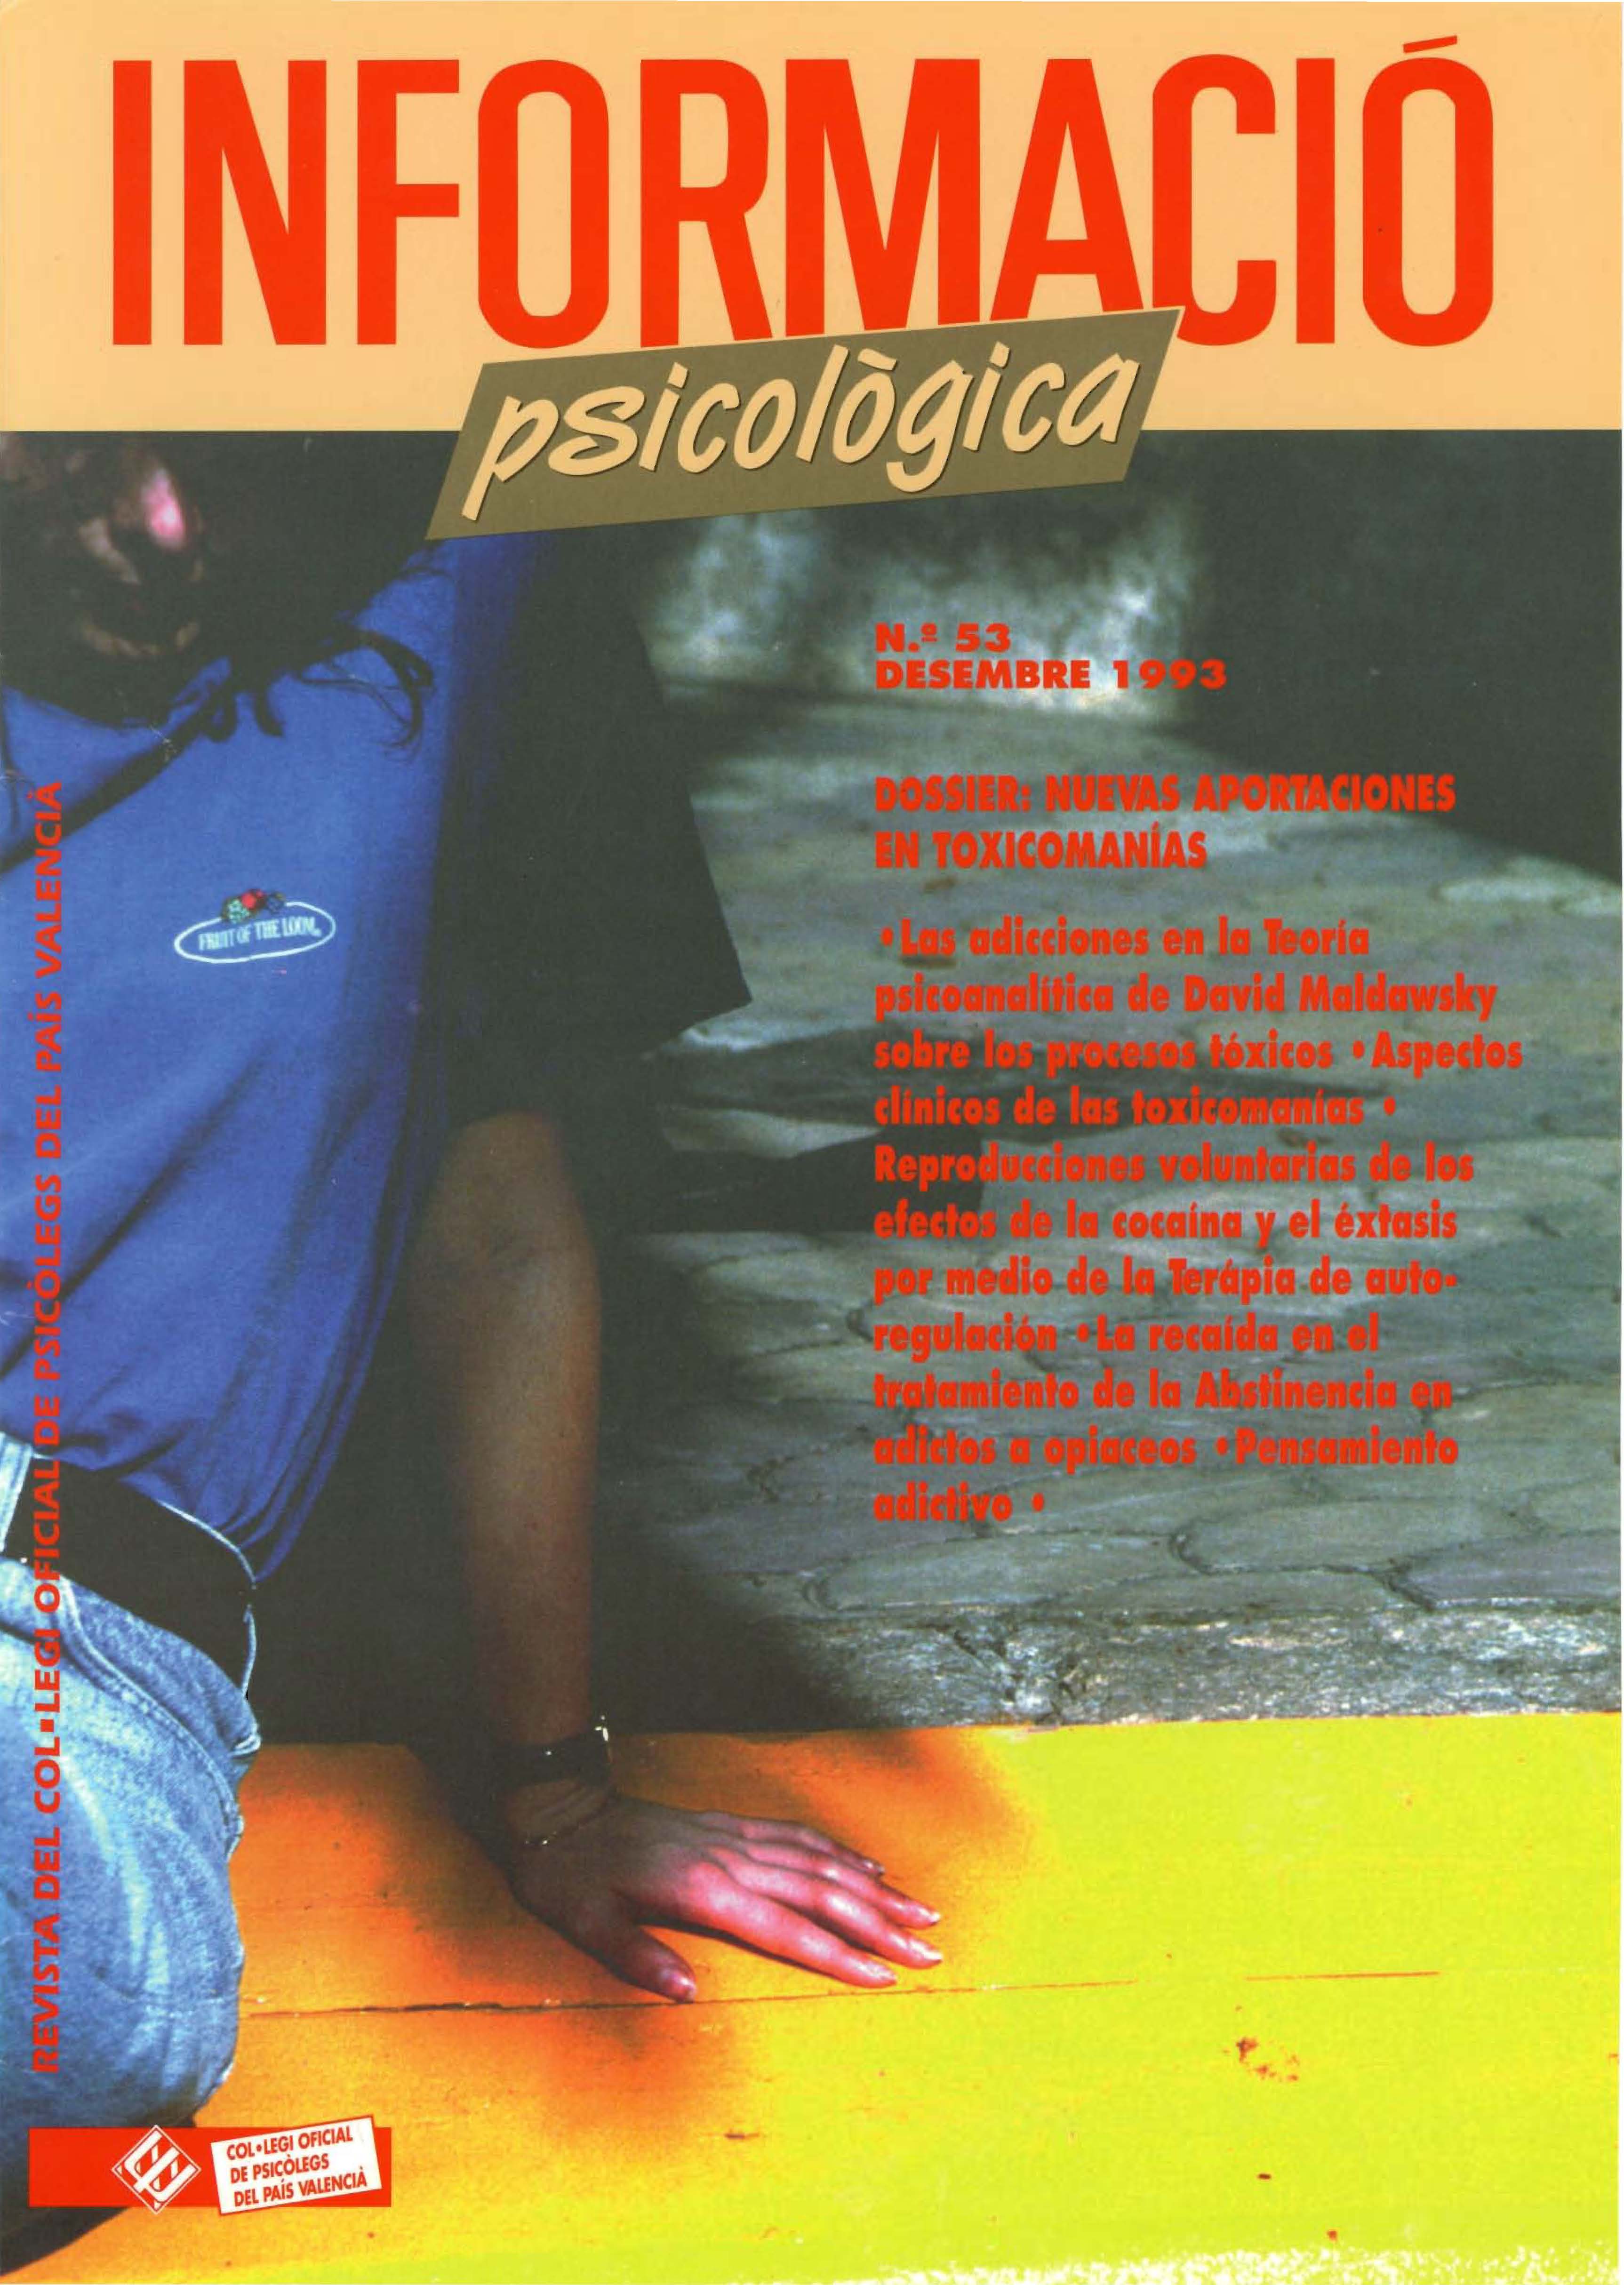 					Ver Núm. 53 (1993): Nuevas aportaciones en toxicomanías (Diciembre 1993)
				